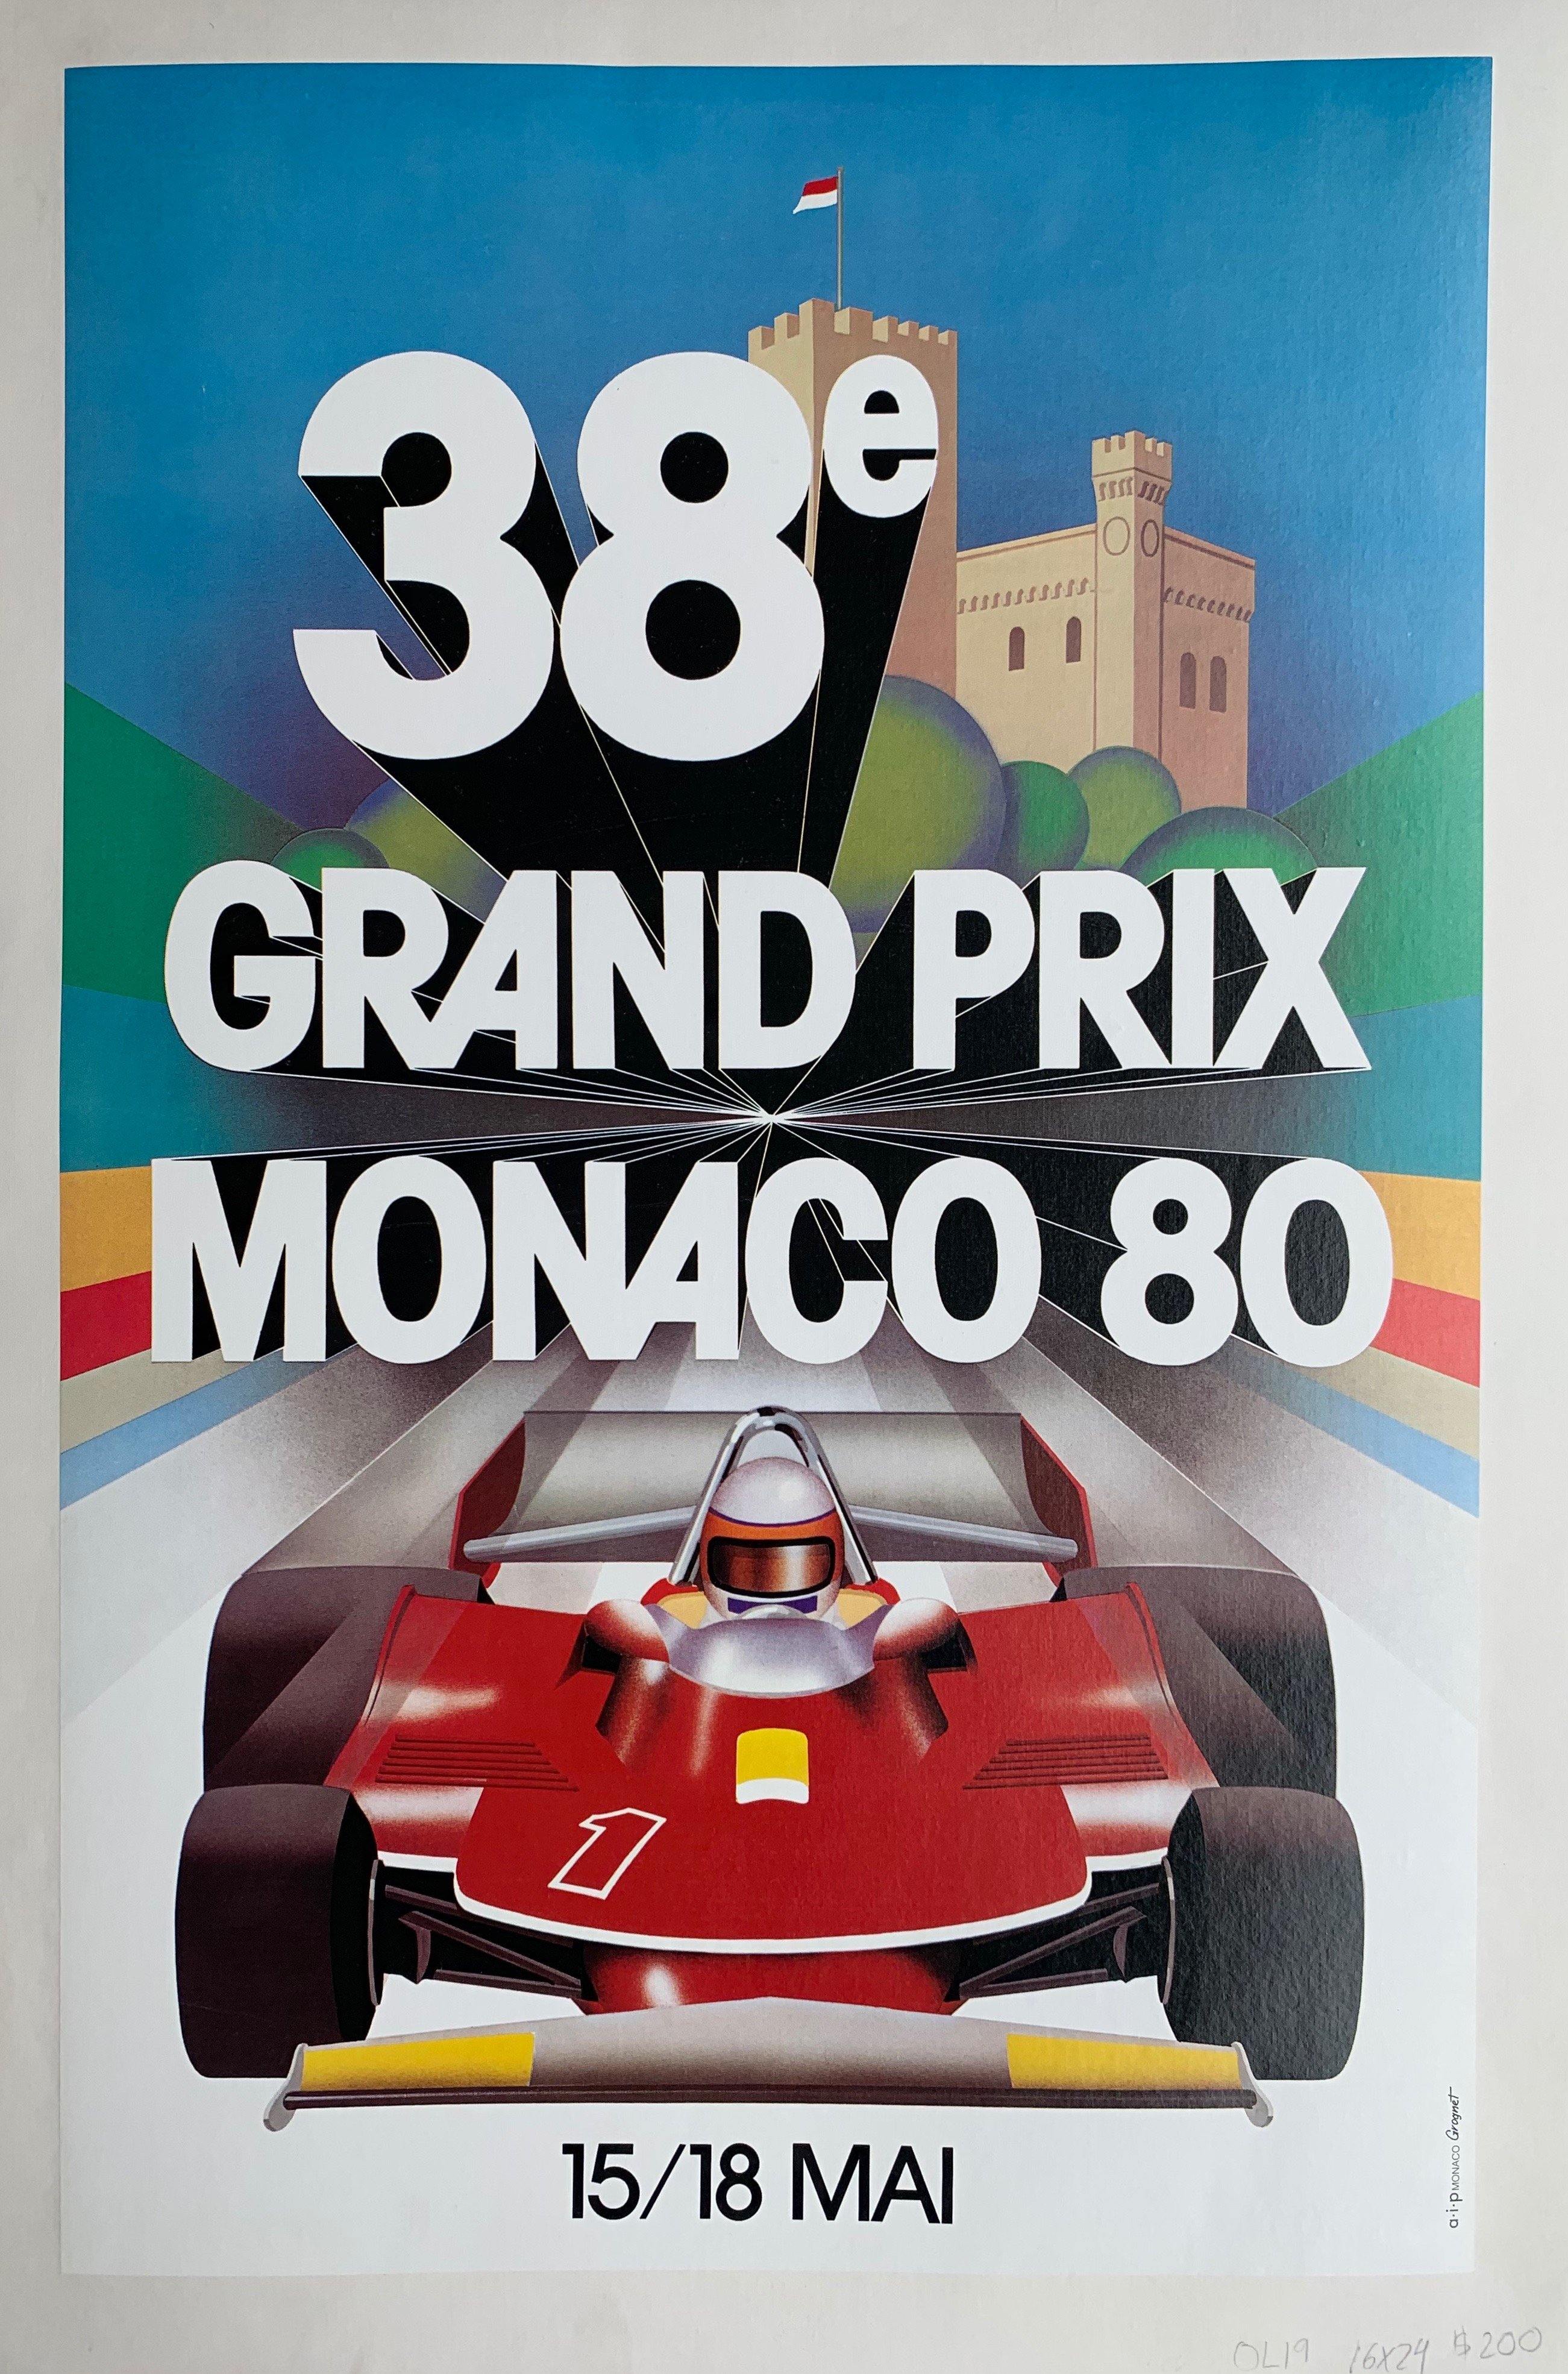 38e Grand Prix Monaco 80 -- 15/18 Mai – Poster Museum